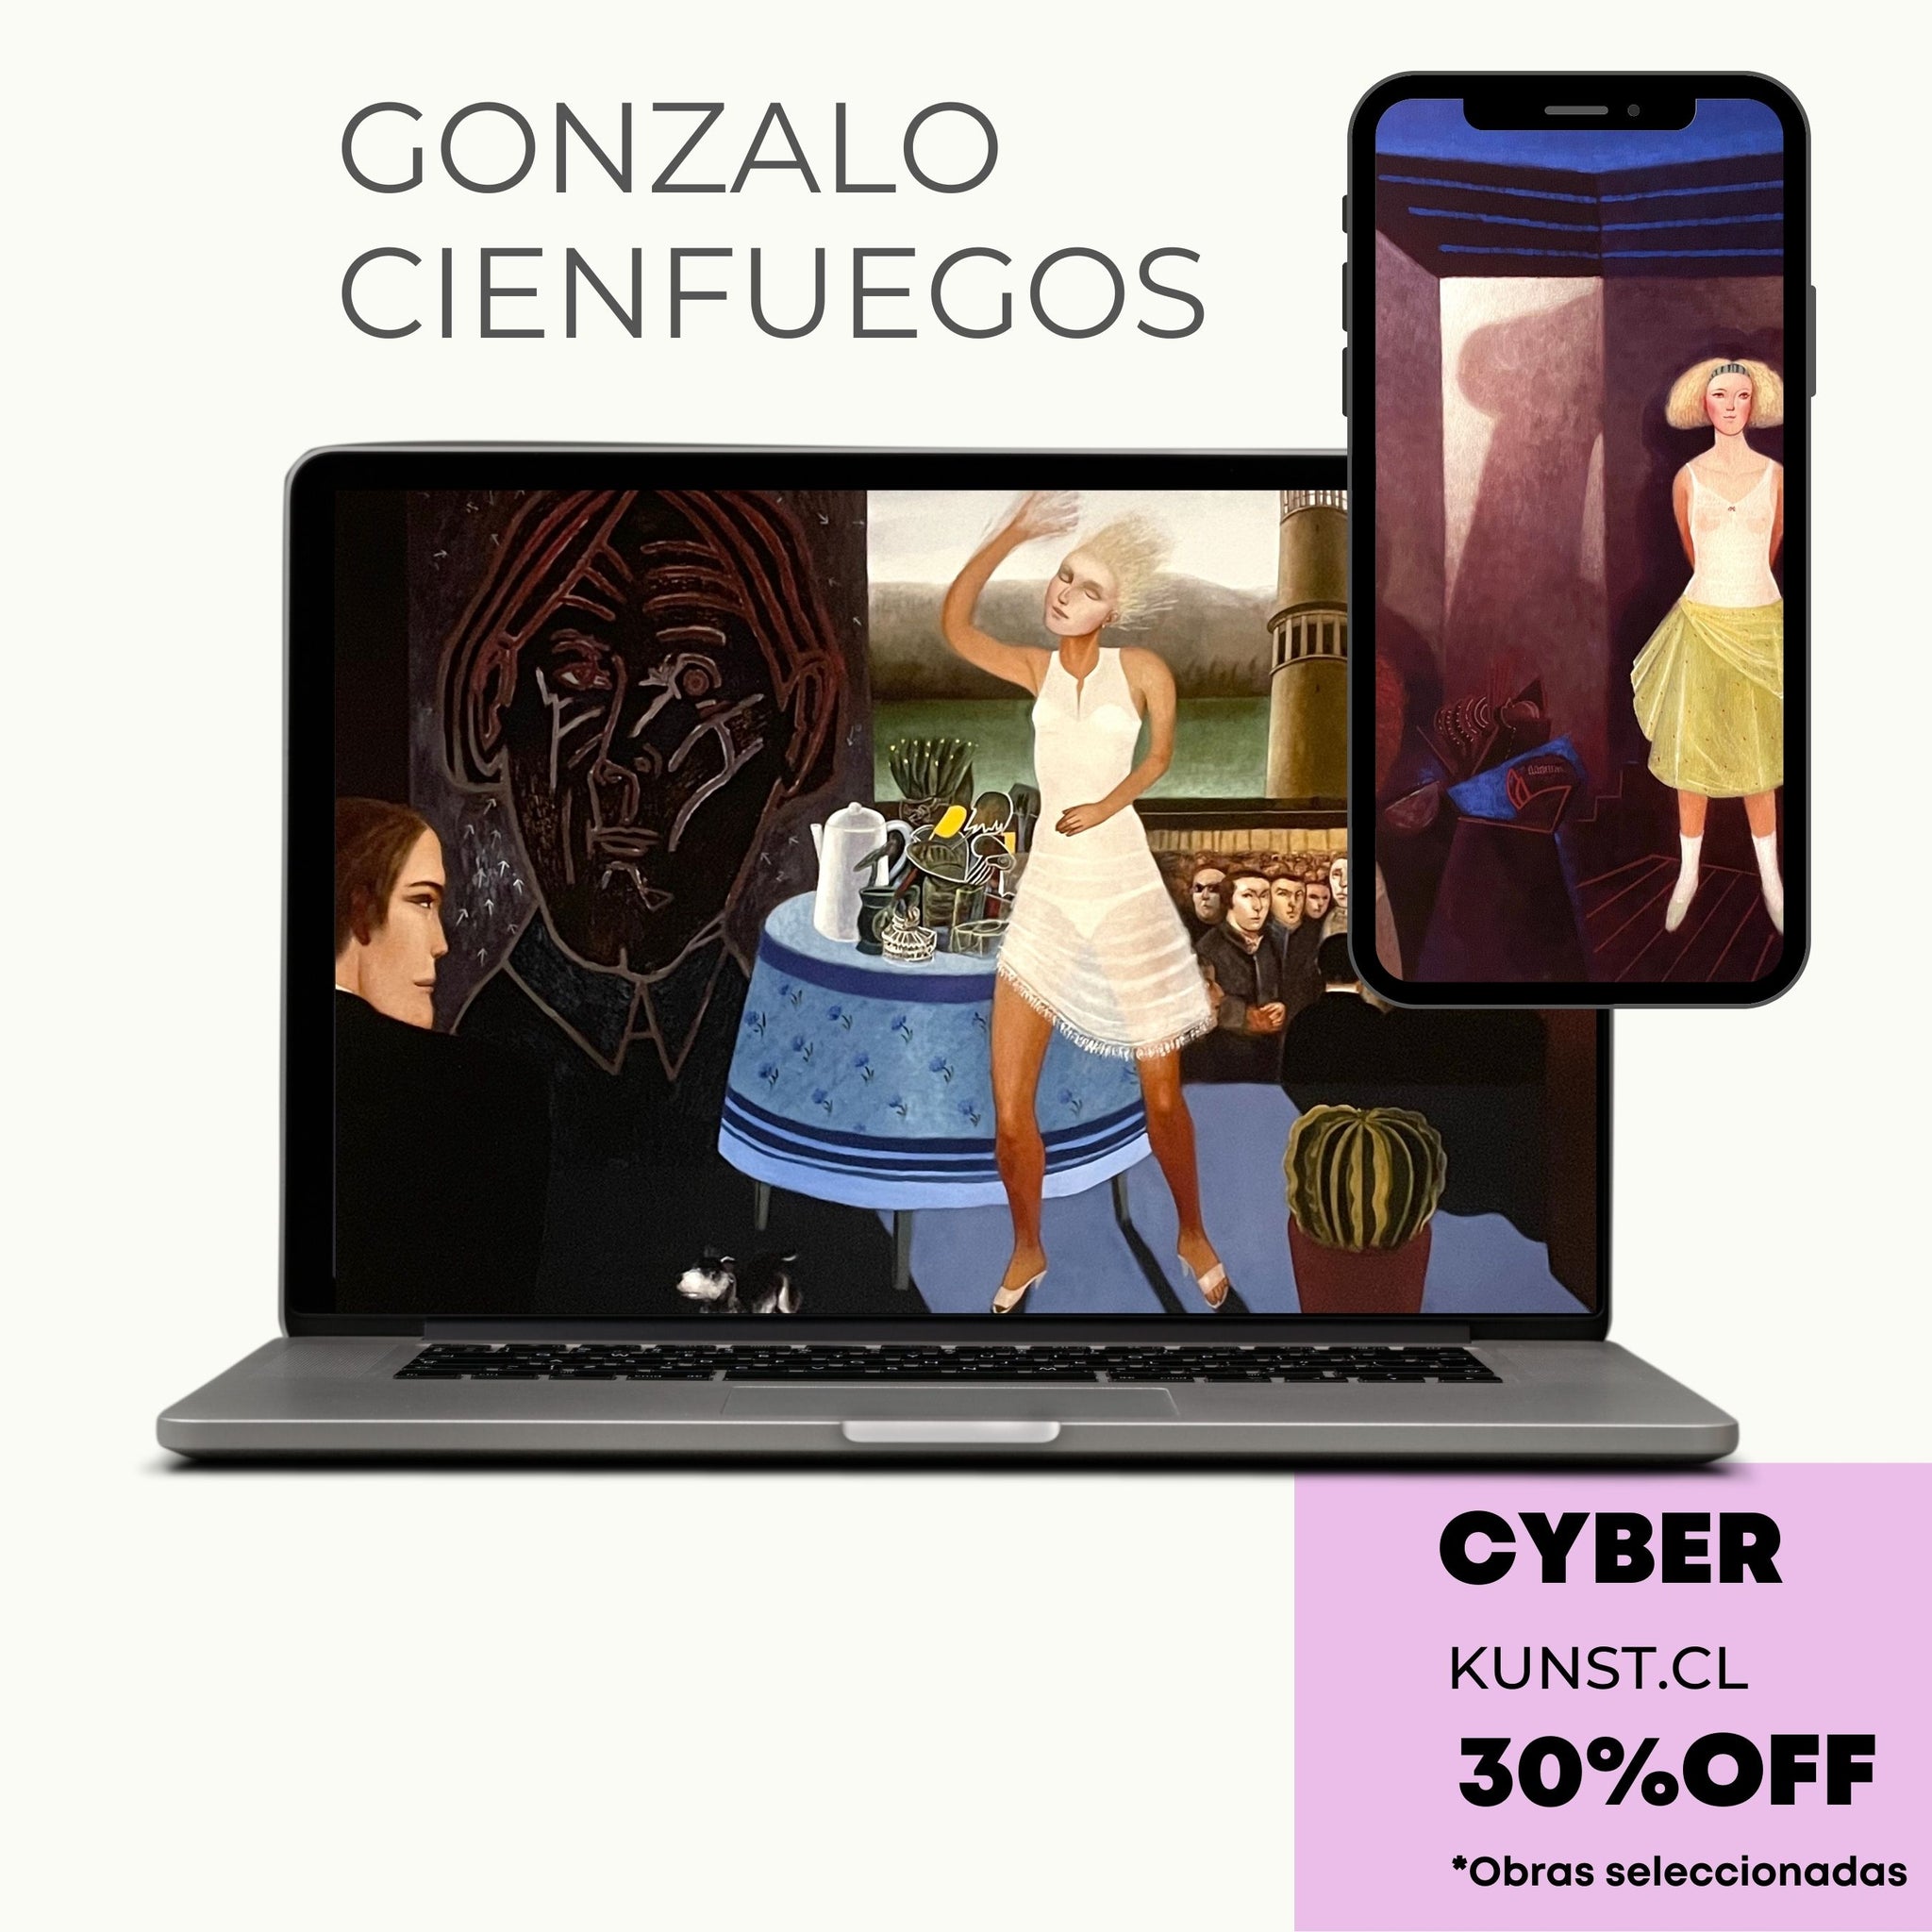 Kunst.cl Cyber -30%